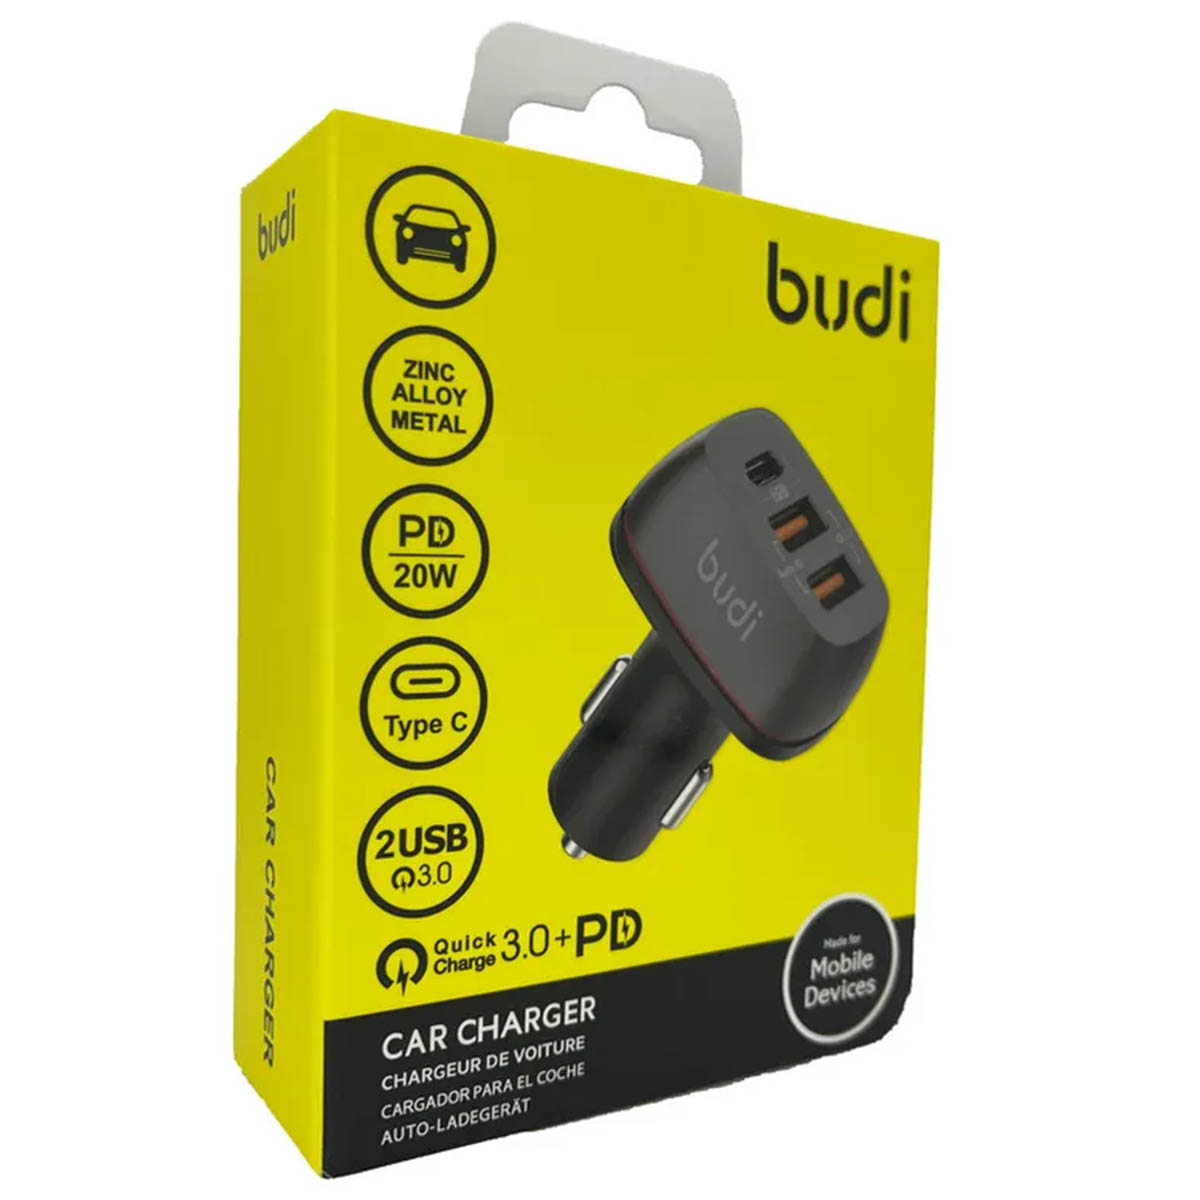 АЗУ (Автомобильное зарядное устройство) BUDI CC626TB, 20W, 1*USB Type C, 2*USB, цвет черный